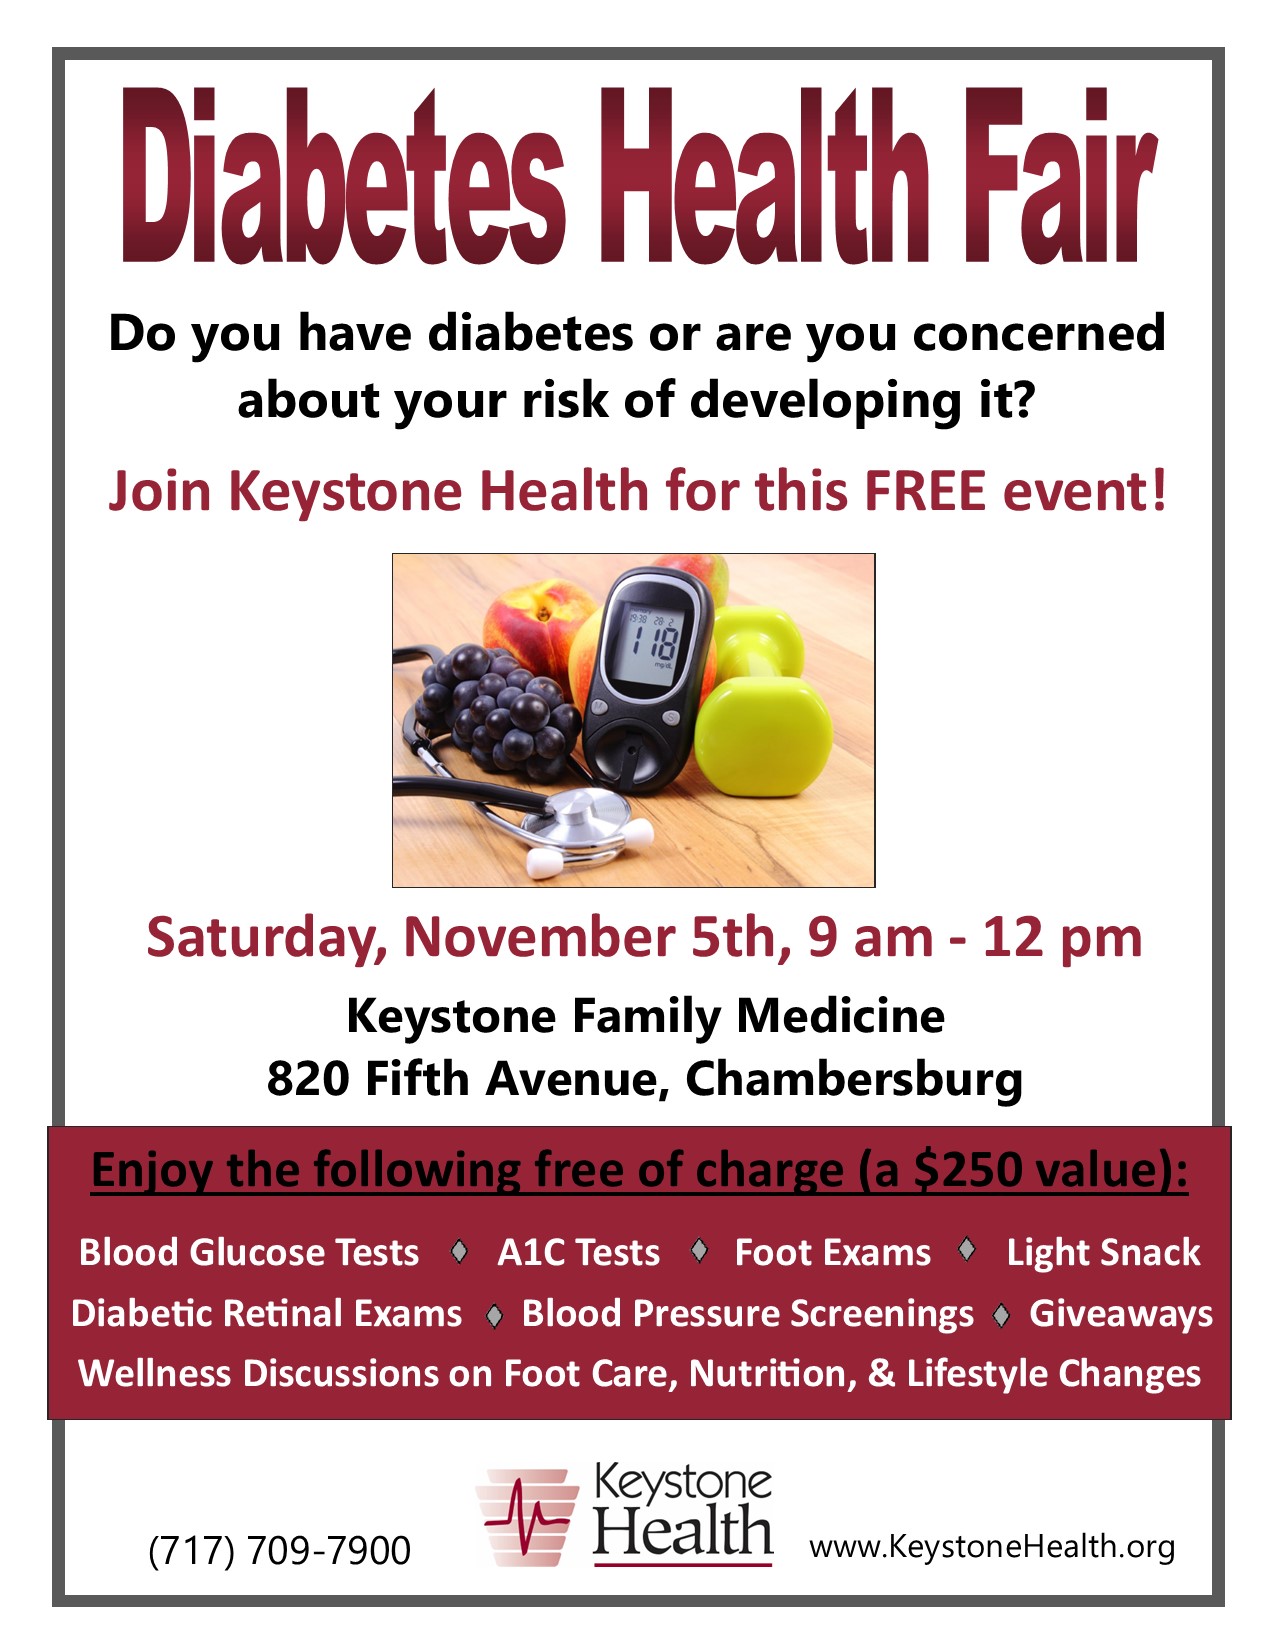 Diabetes health fair event flyer 